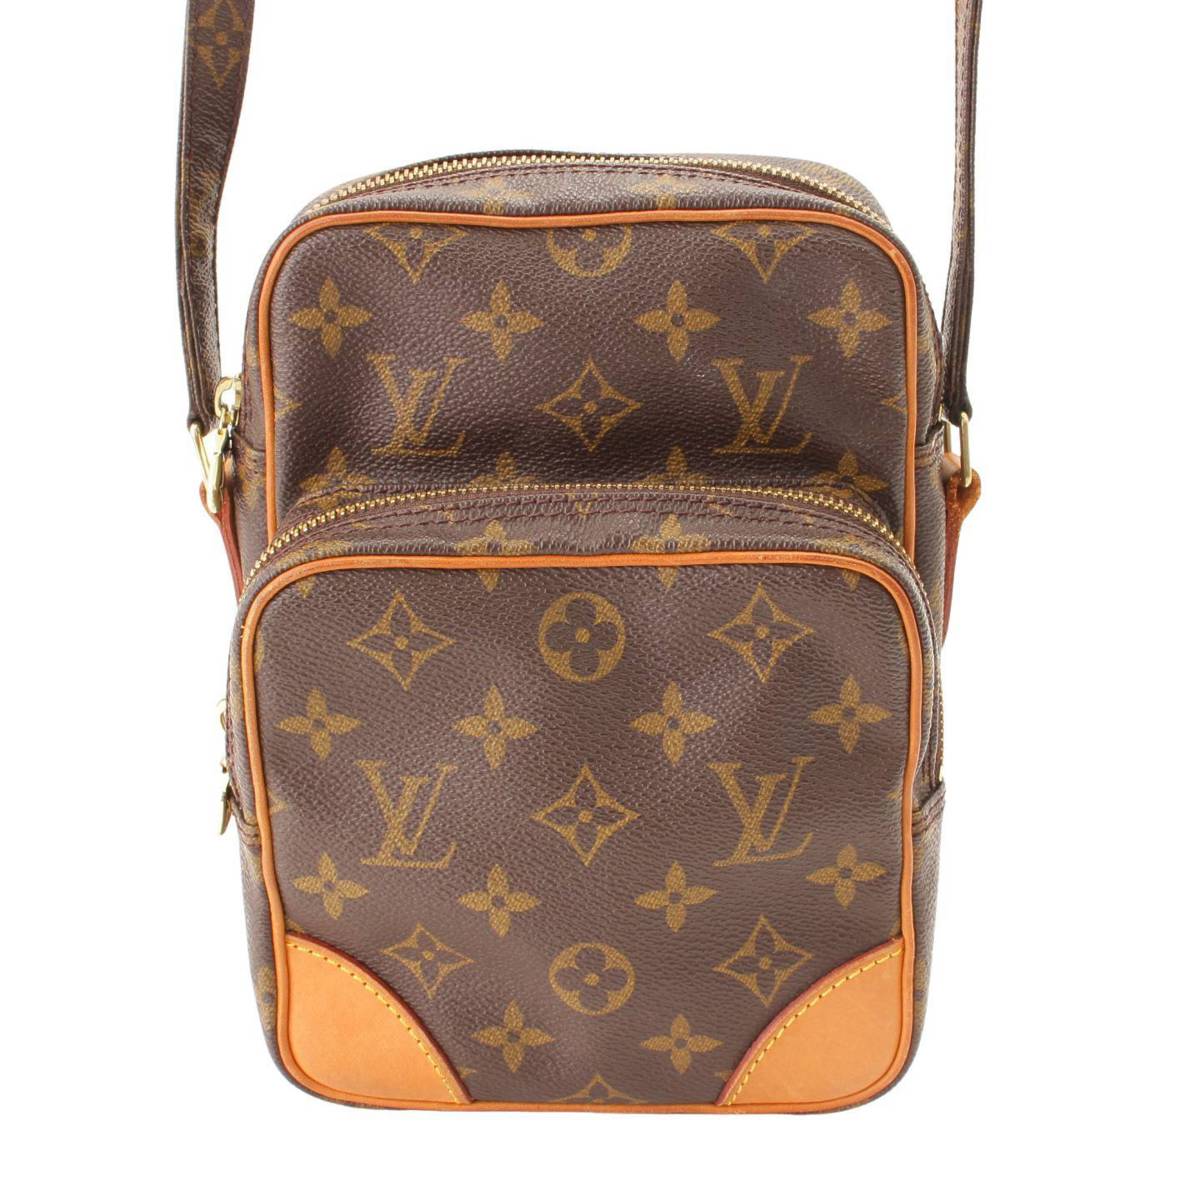 ルイヴィトン(Louis Vuitton) モノグラム アマゾン ショルダーバッグ M45236 ブラウン